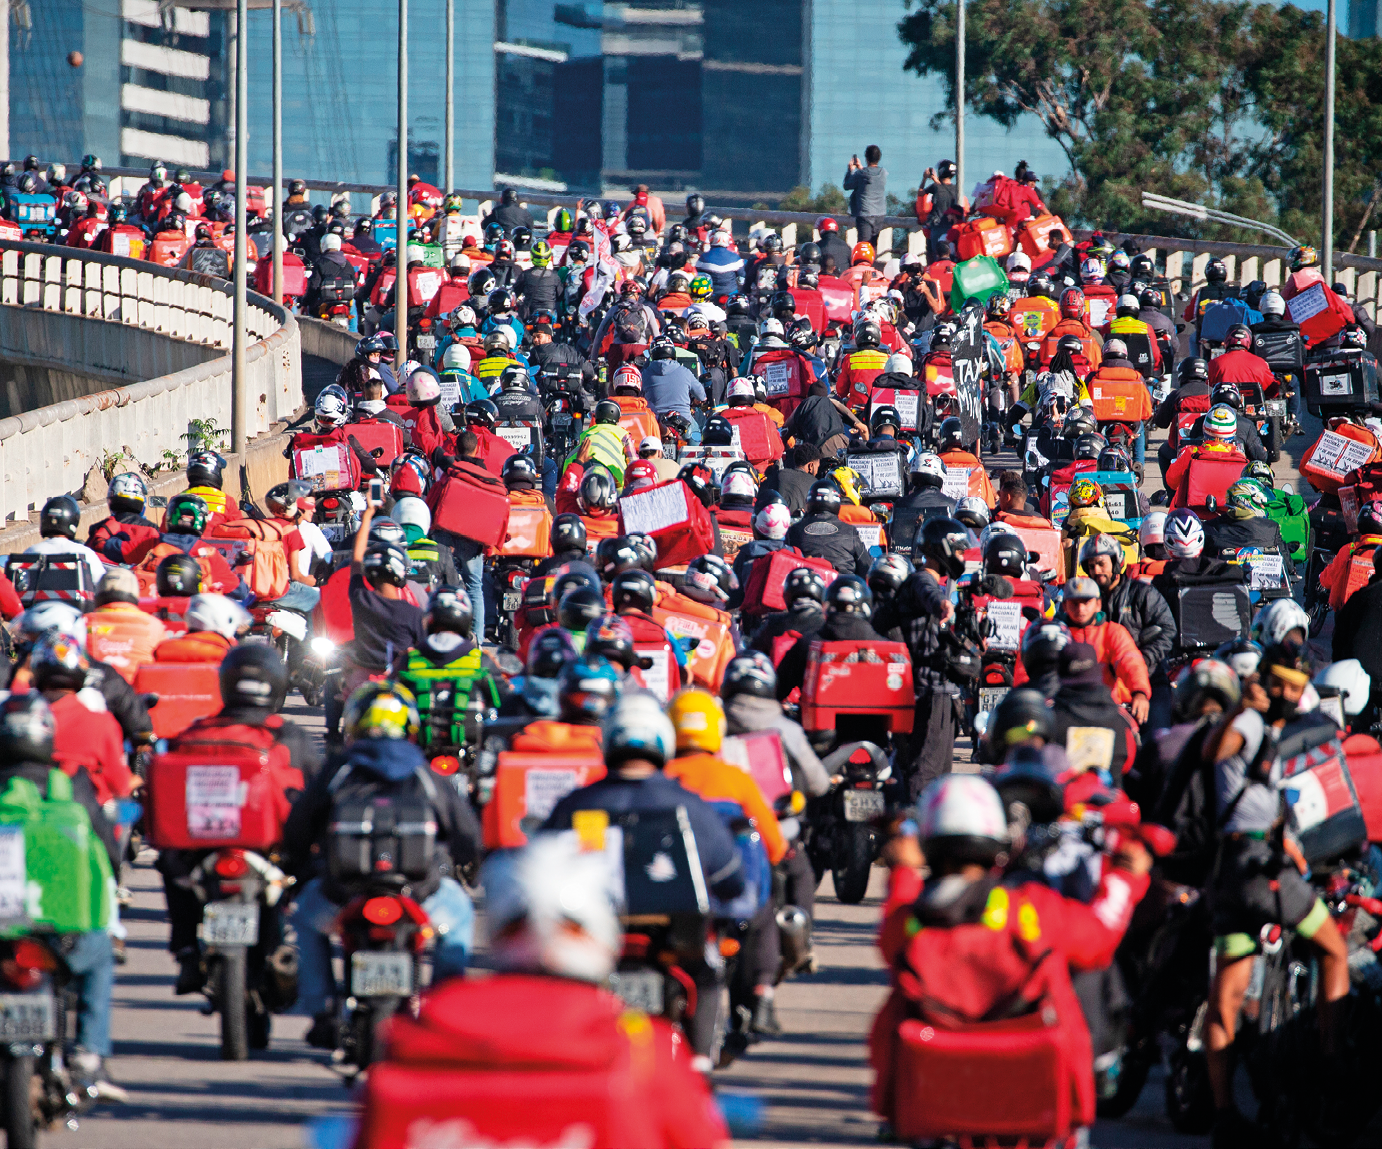 Fotografia. Uma multidão de pessoas aglomeradas sobre uma via pavimentada, todos sobre motocicletas, a maioria utilizando capacetes e portando mochilas quadradas sobre as costas ou baús sobre as motocicletas.